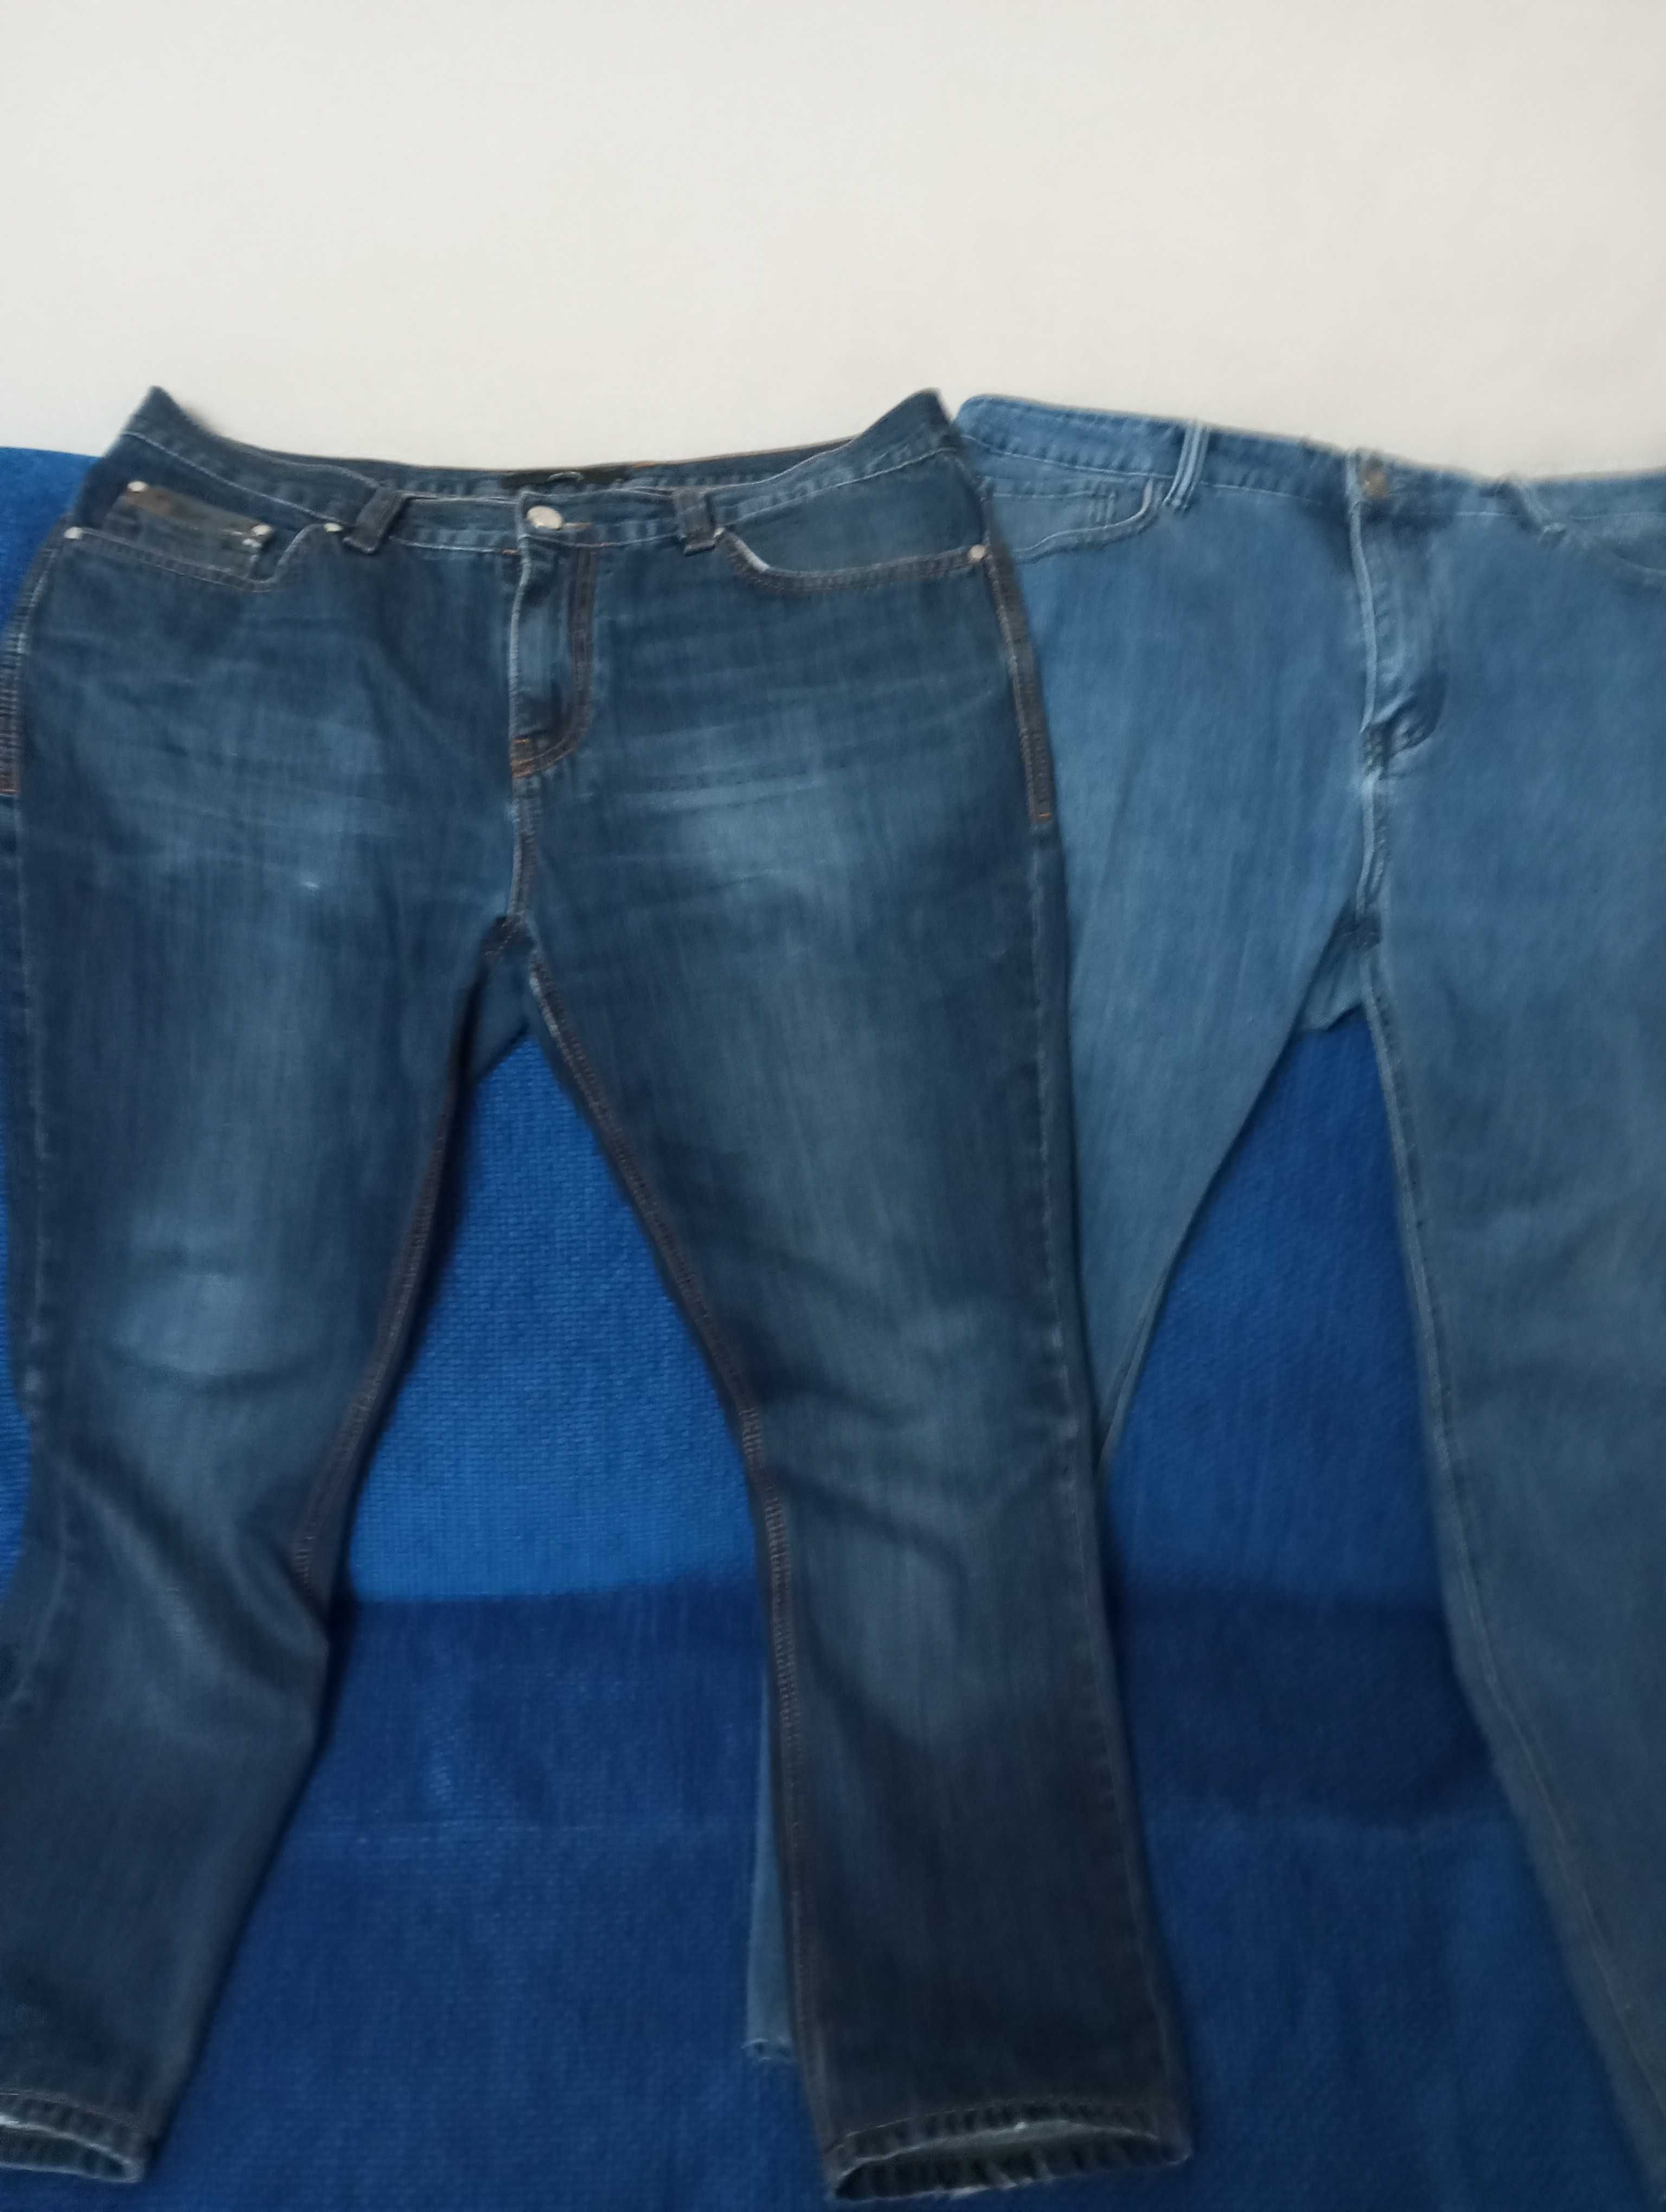 Продам джинсы avva,Турция,50-52,2 штуки недорого